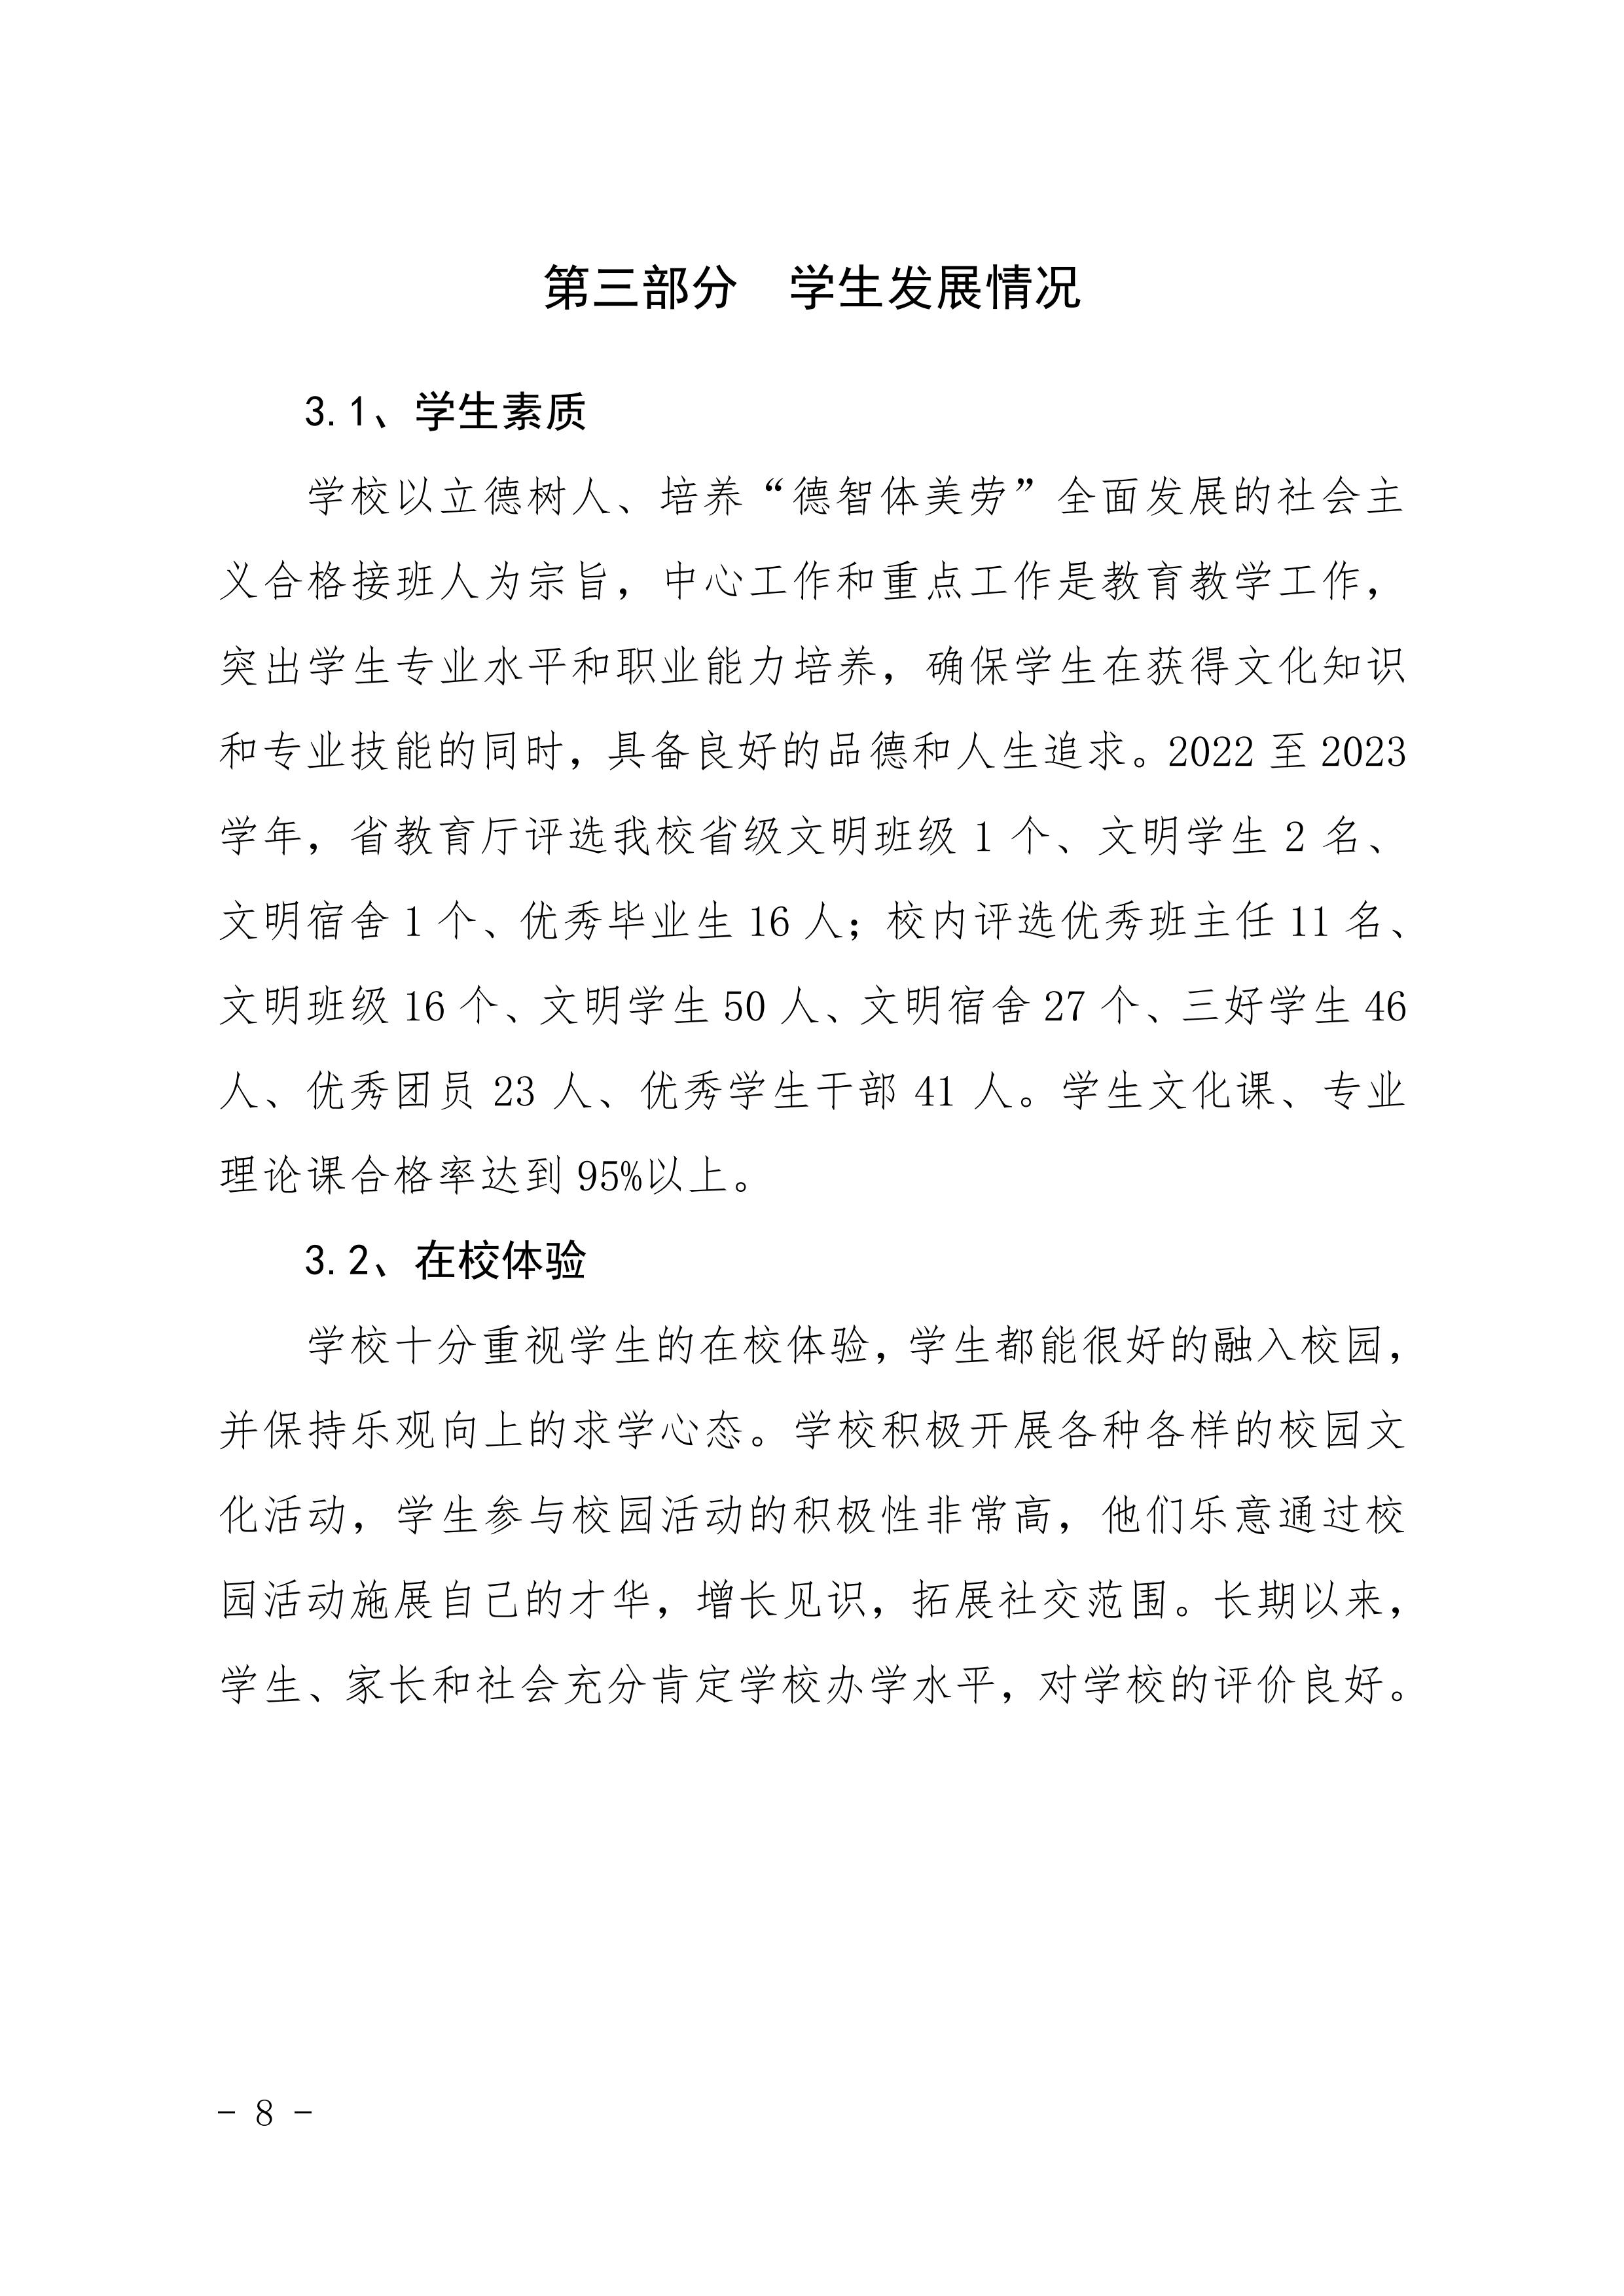 河南省民政学校职业教育质量报告（2023年度）发布版_11.jpg